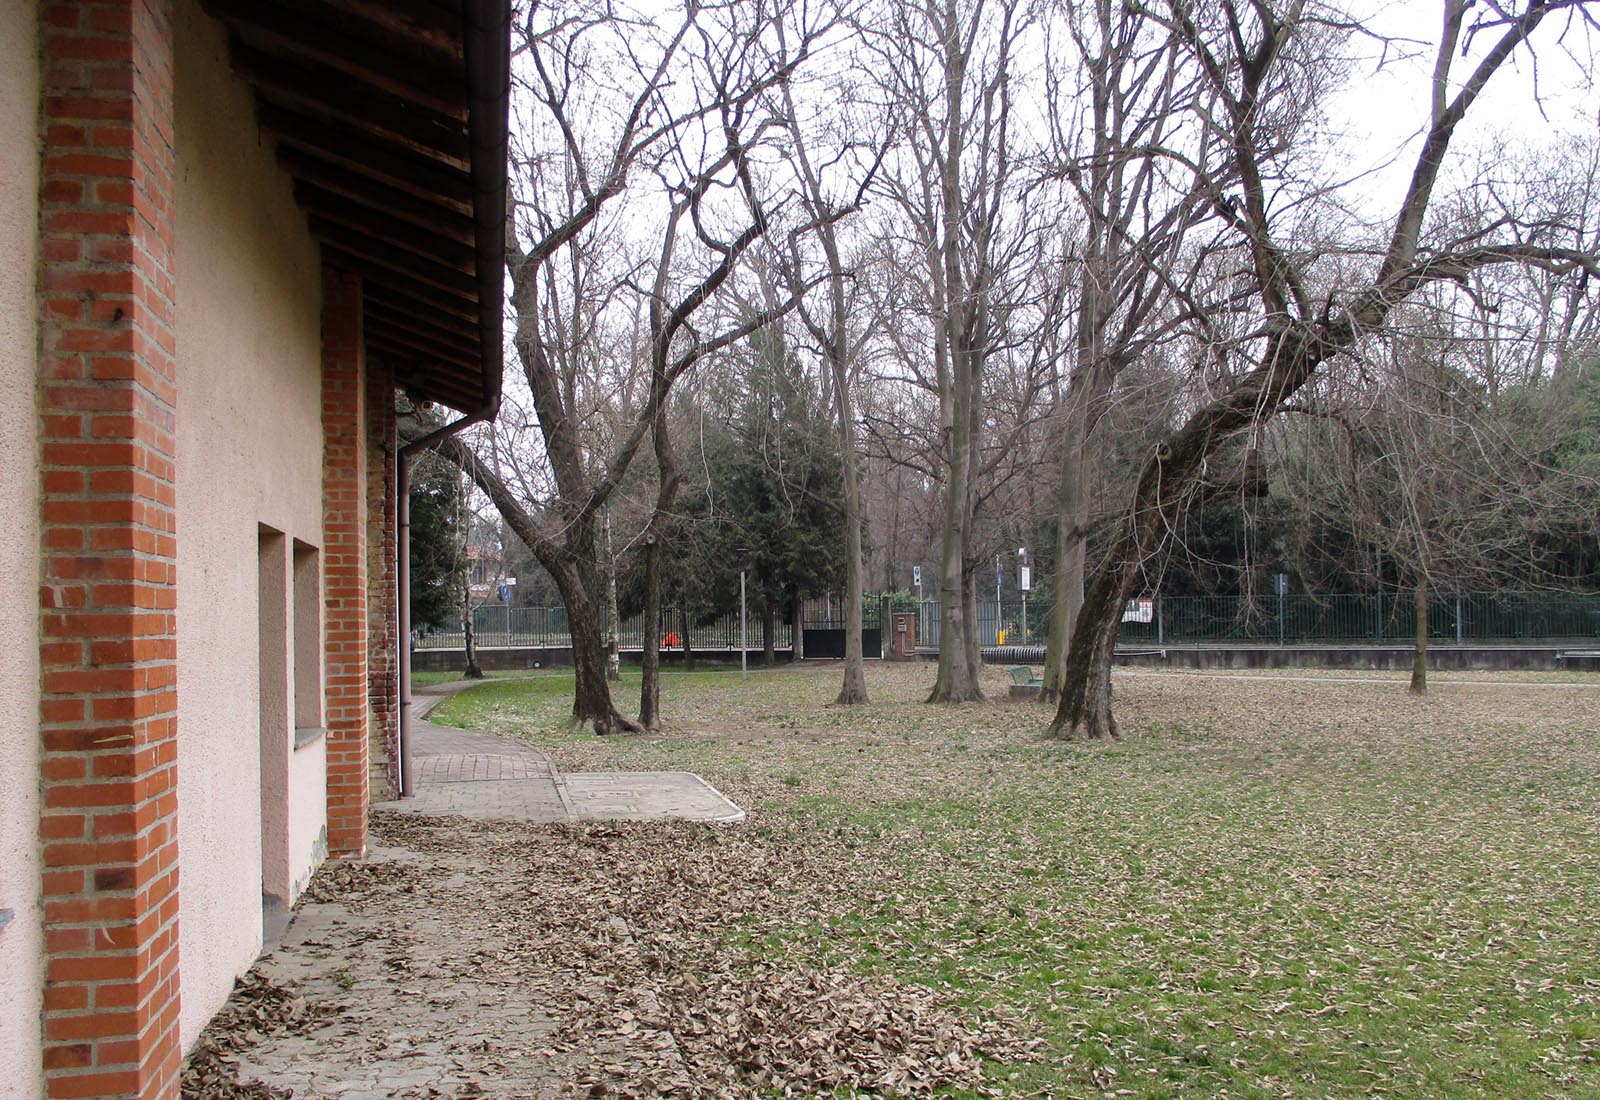 Casa nel parco Caduti Nassirya a Somma Lombardo - Vista dell'edificio esistente